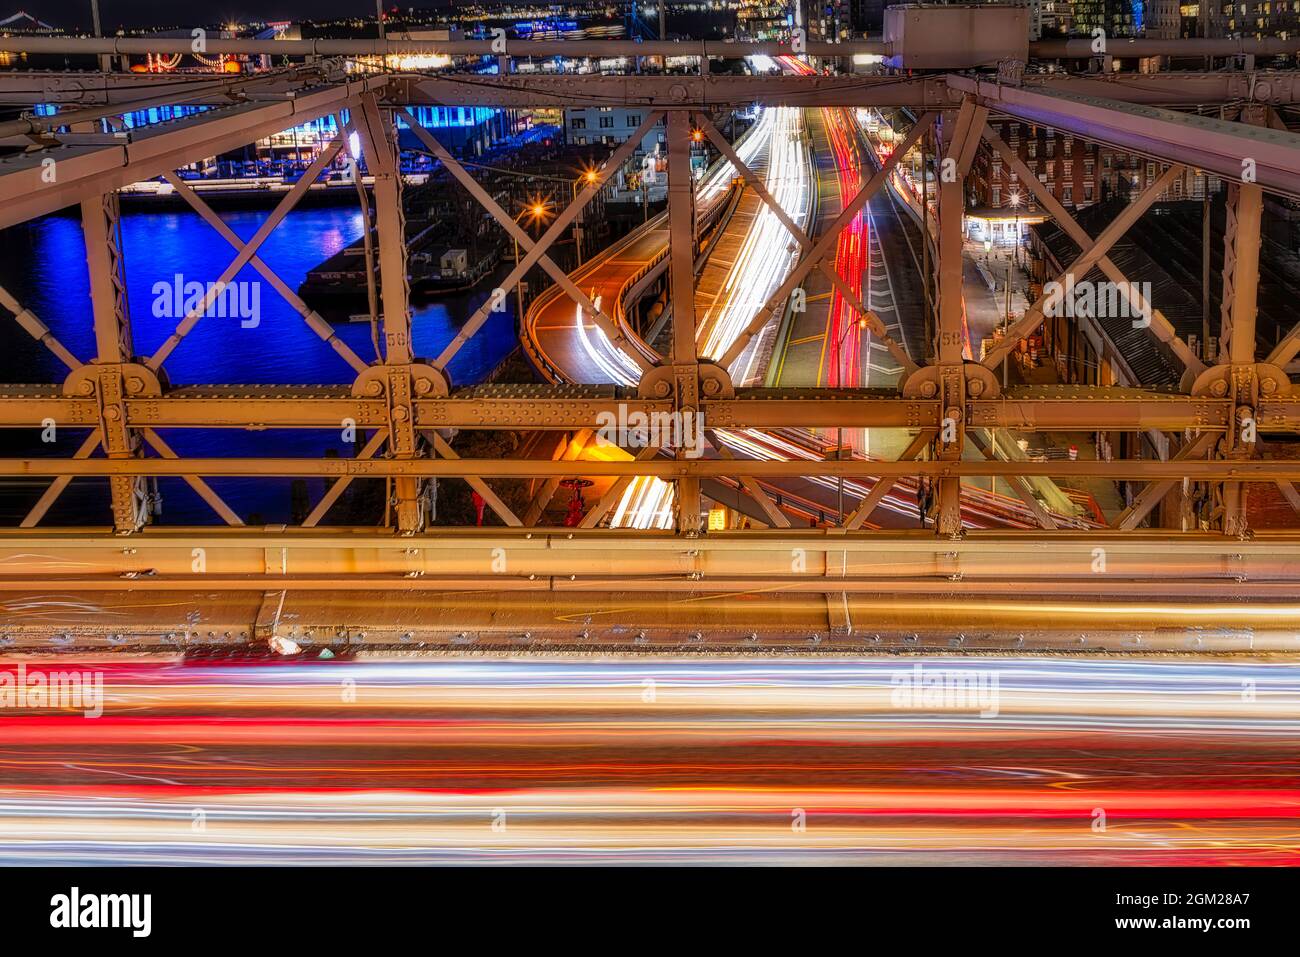 Farben und Energie von NYC - Lichtwege, Formen, Farben, Muster und dynamische Energie, die durch den Autoverkehr auf der Brooklyn Bridge und erzeugt werden Stockfoto